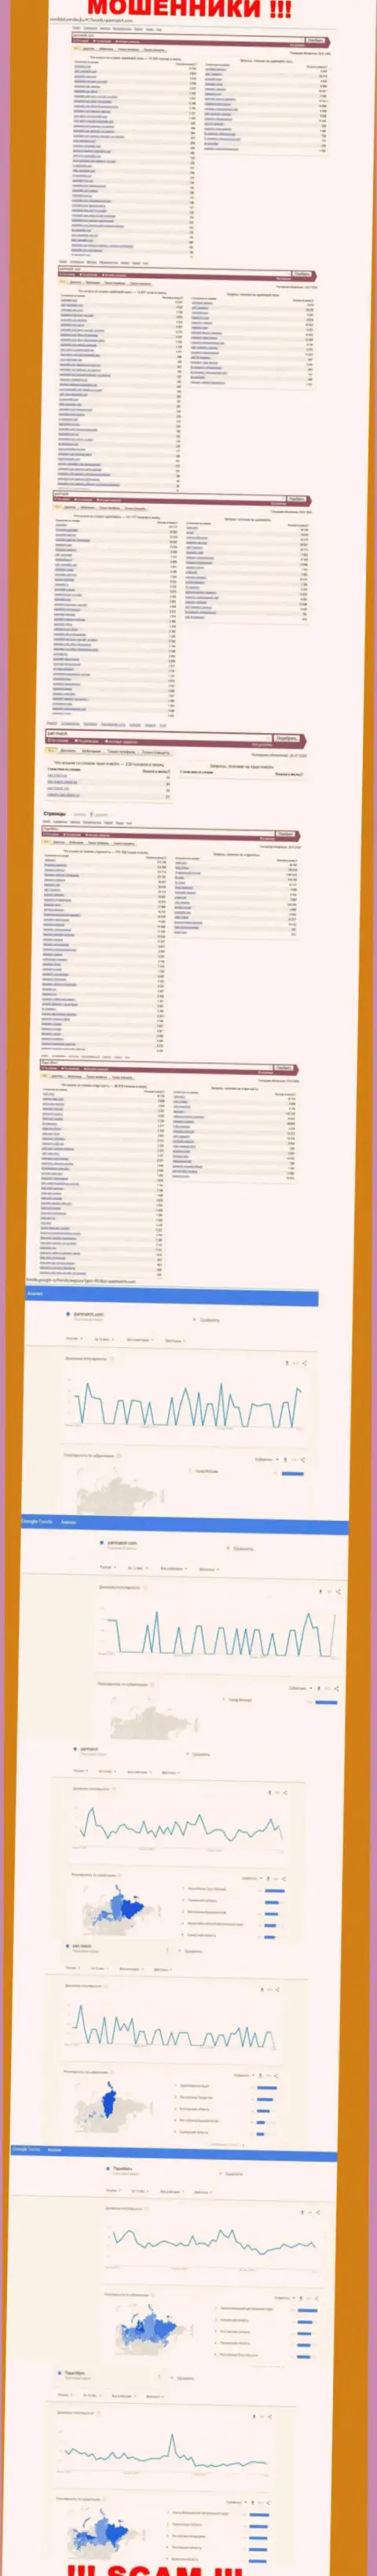 Суммарное число онлайн запросов в поисковиках сети Интернет по бренду мошенников ПариМатч